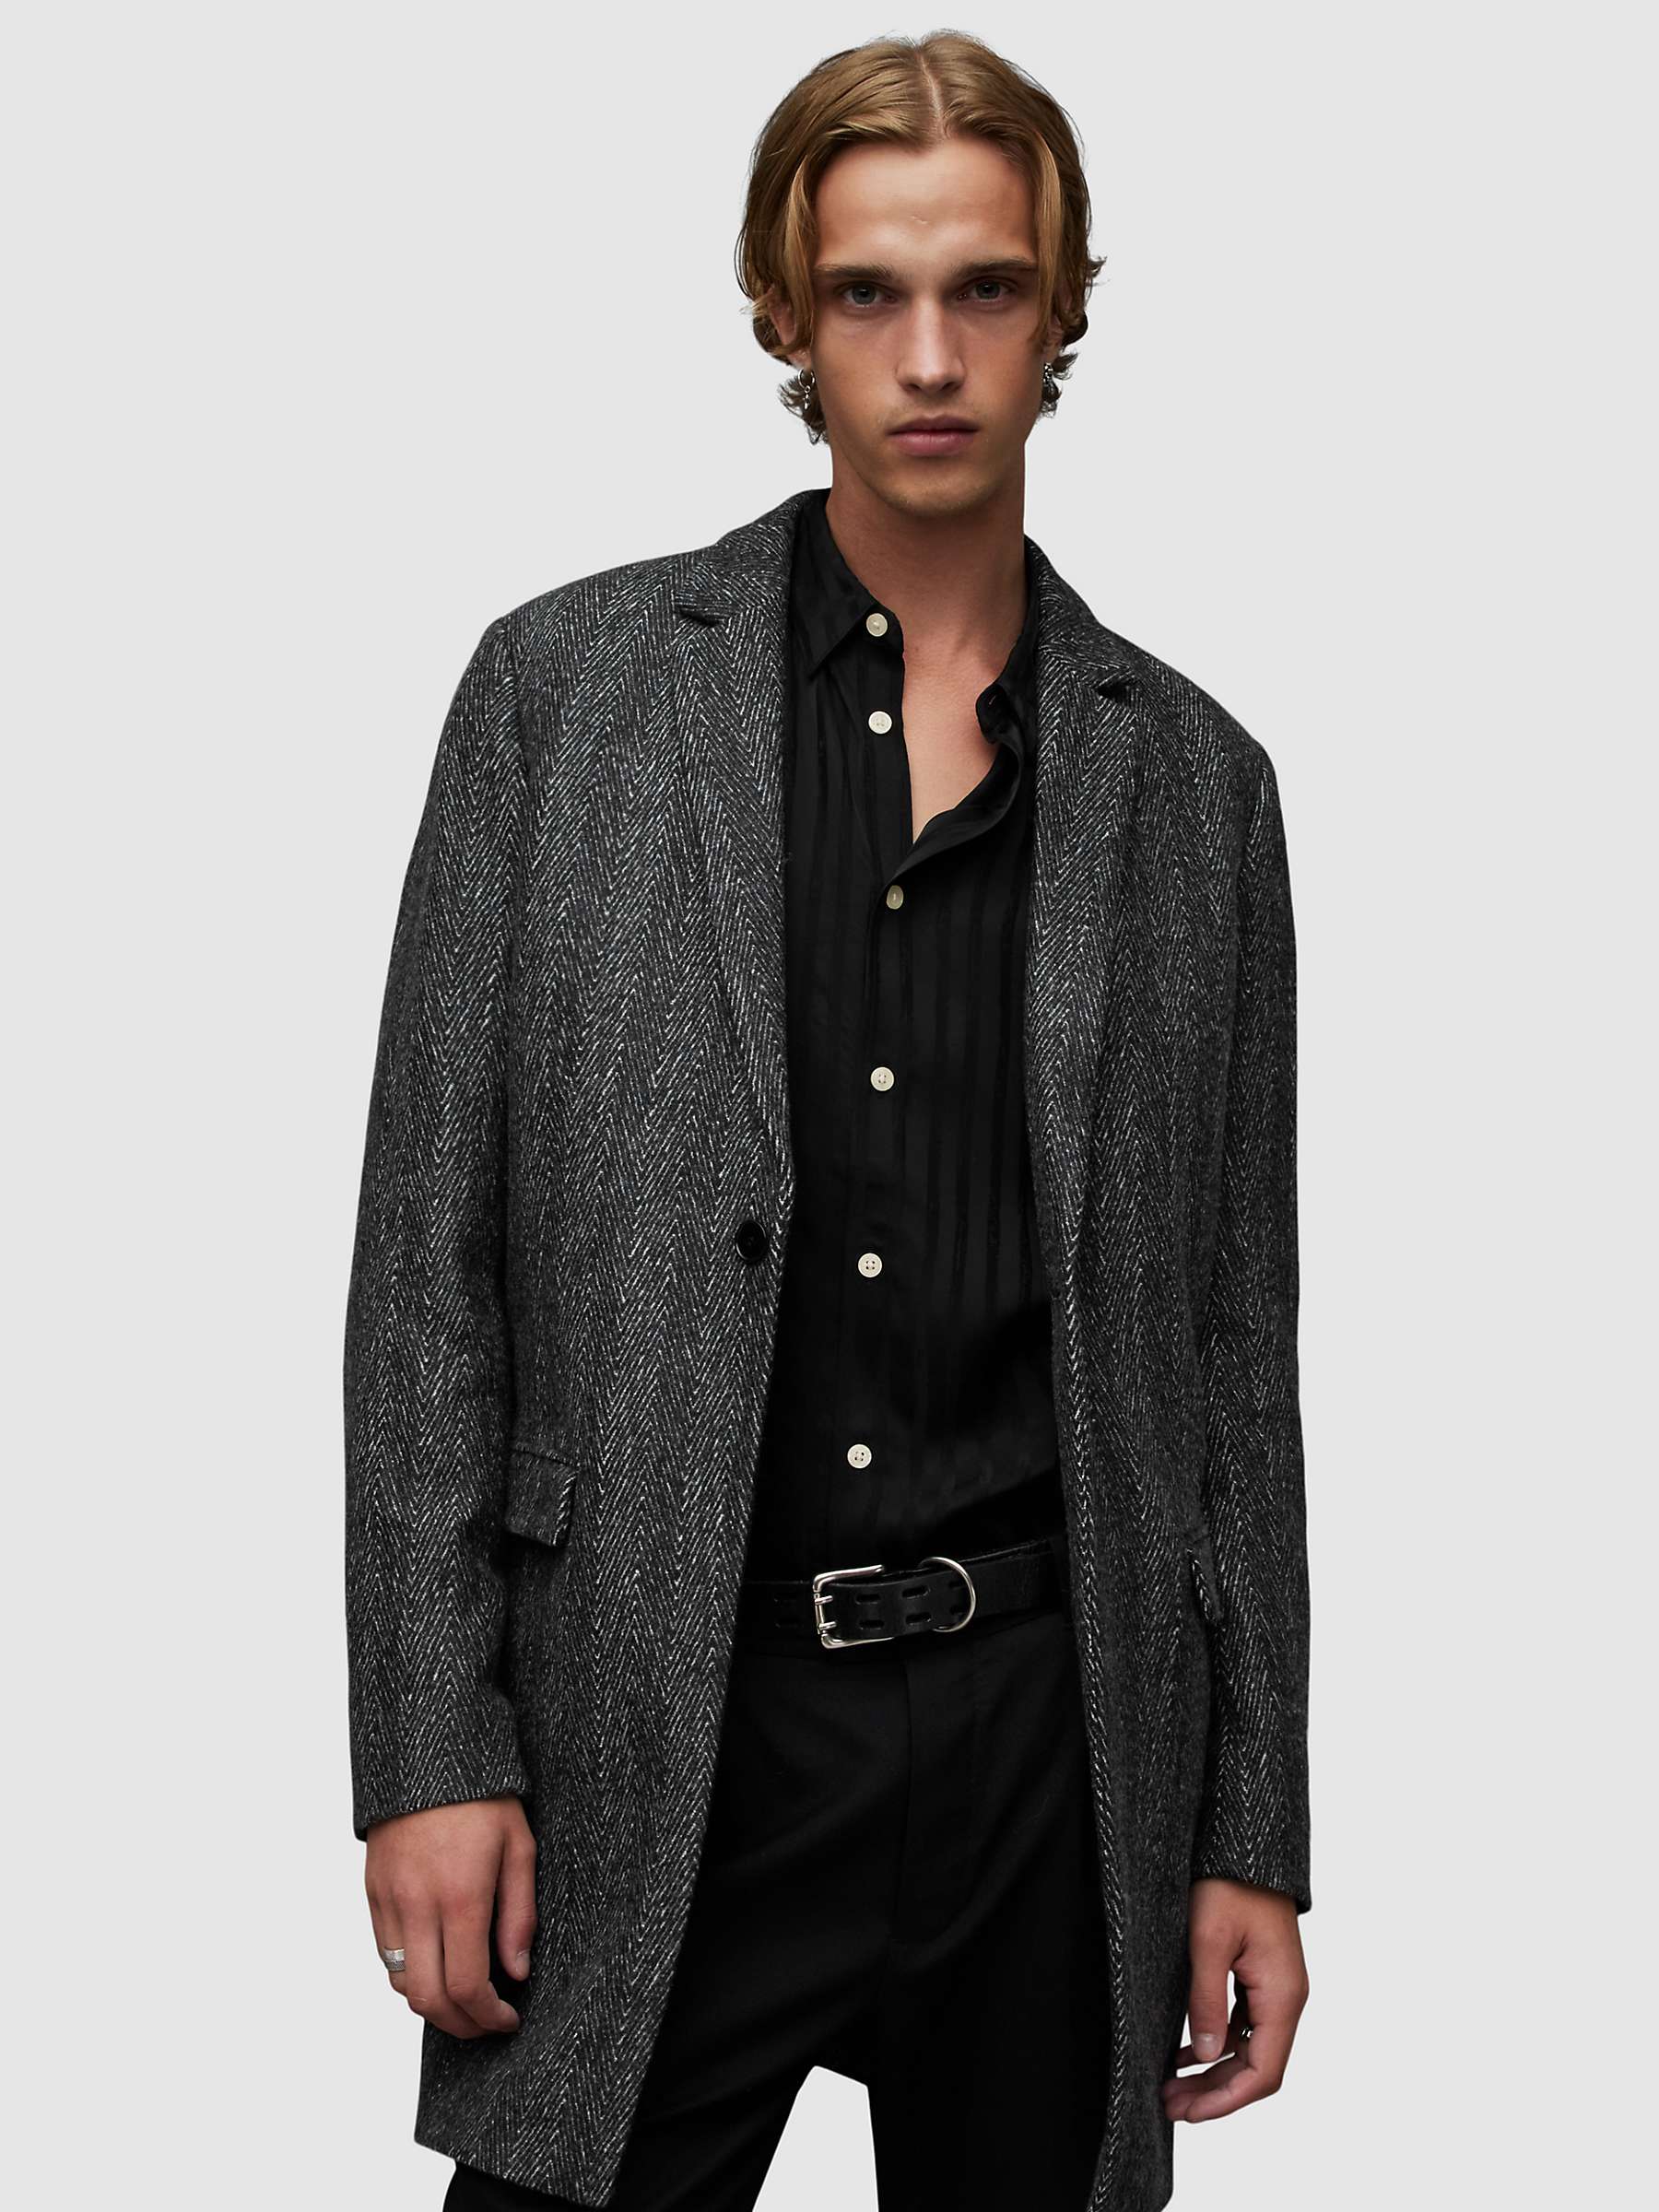 Buy AllSaints Manor Herringbone Wool Coat, Black Online at johnlewis.com